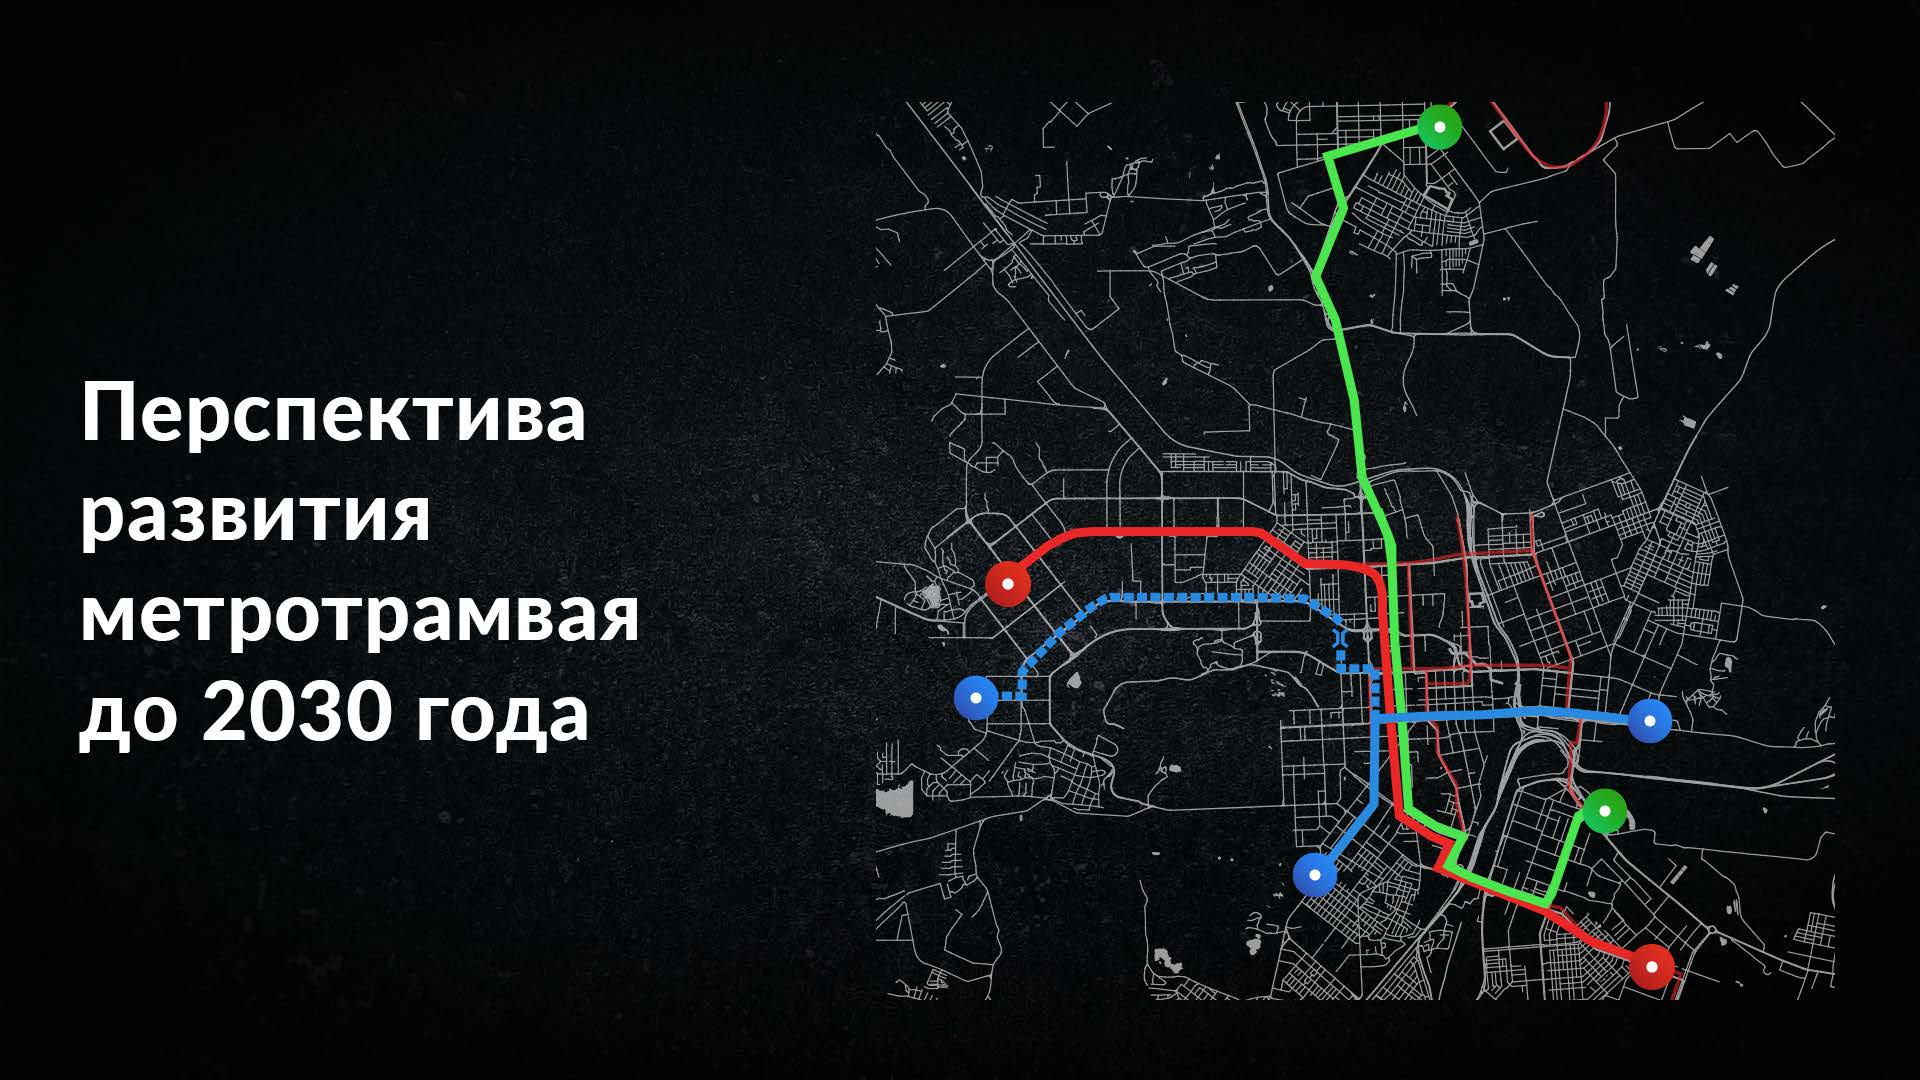 Синяя пунктирная линия на схеме — трамвайная дорога по улице Братьев Кашириных до Тополиной аллеи